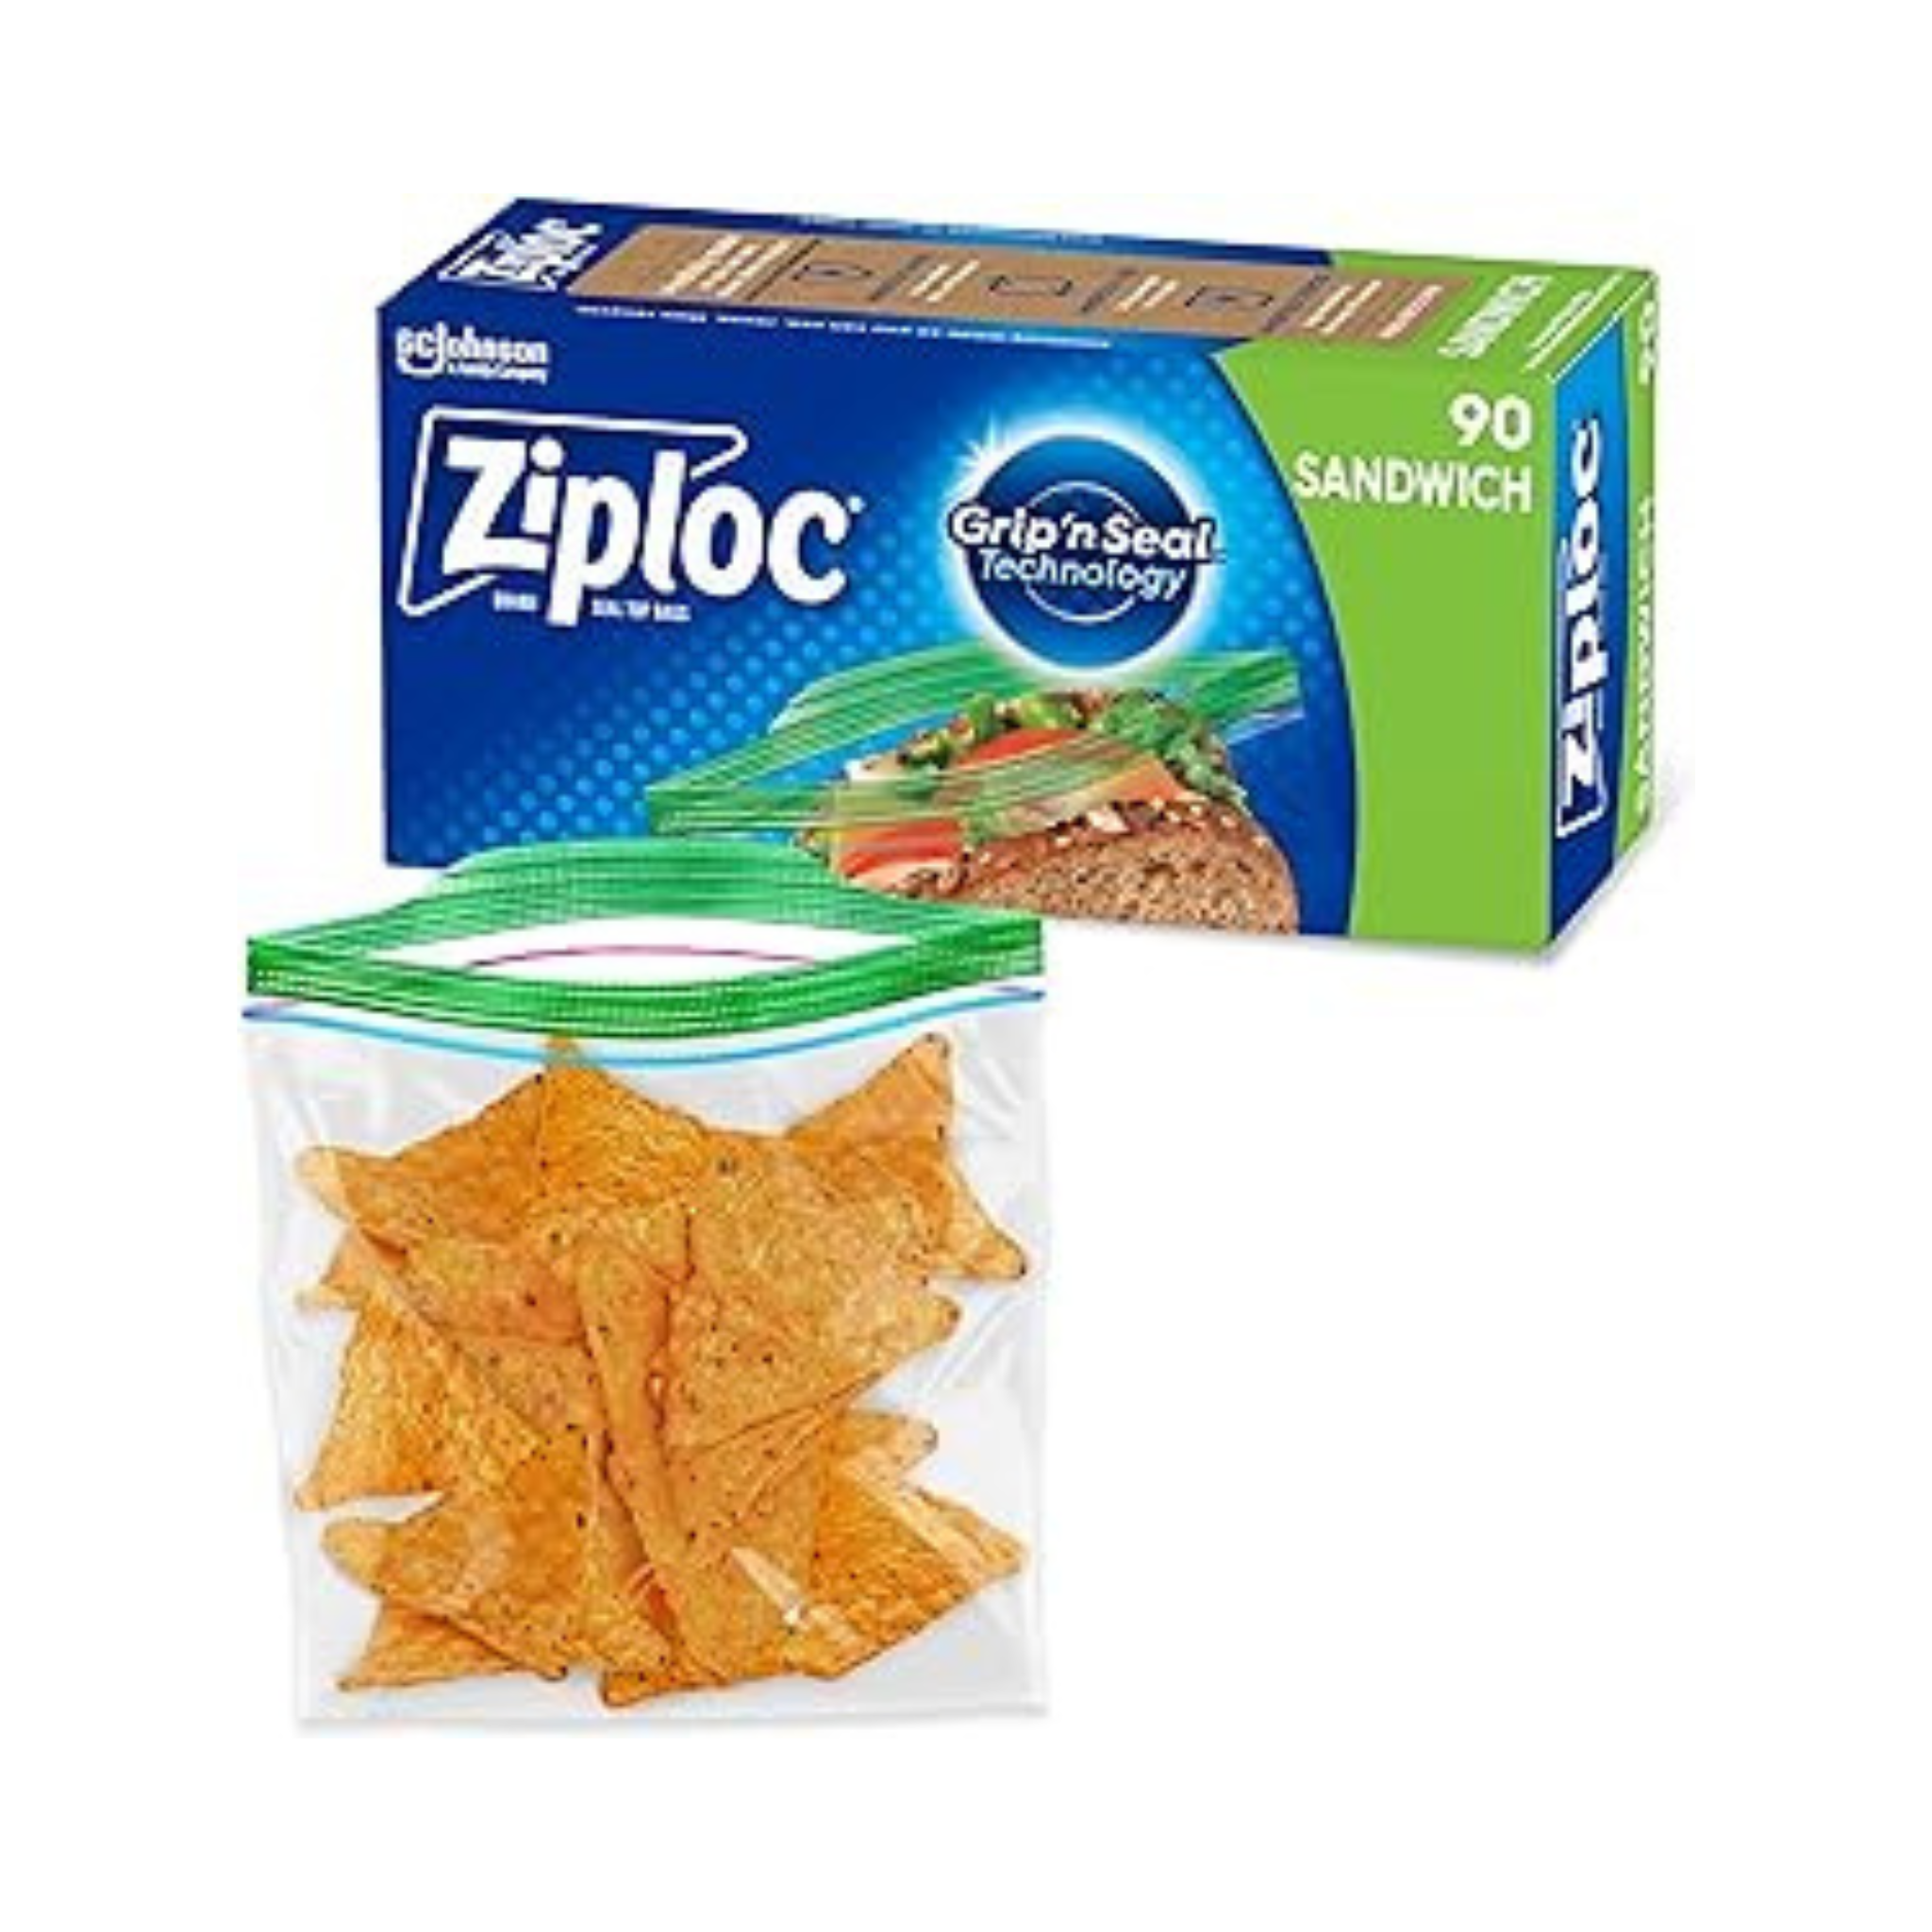 Ziploc Sandwich Bags, 90 Count